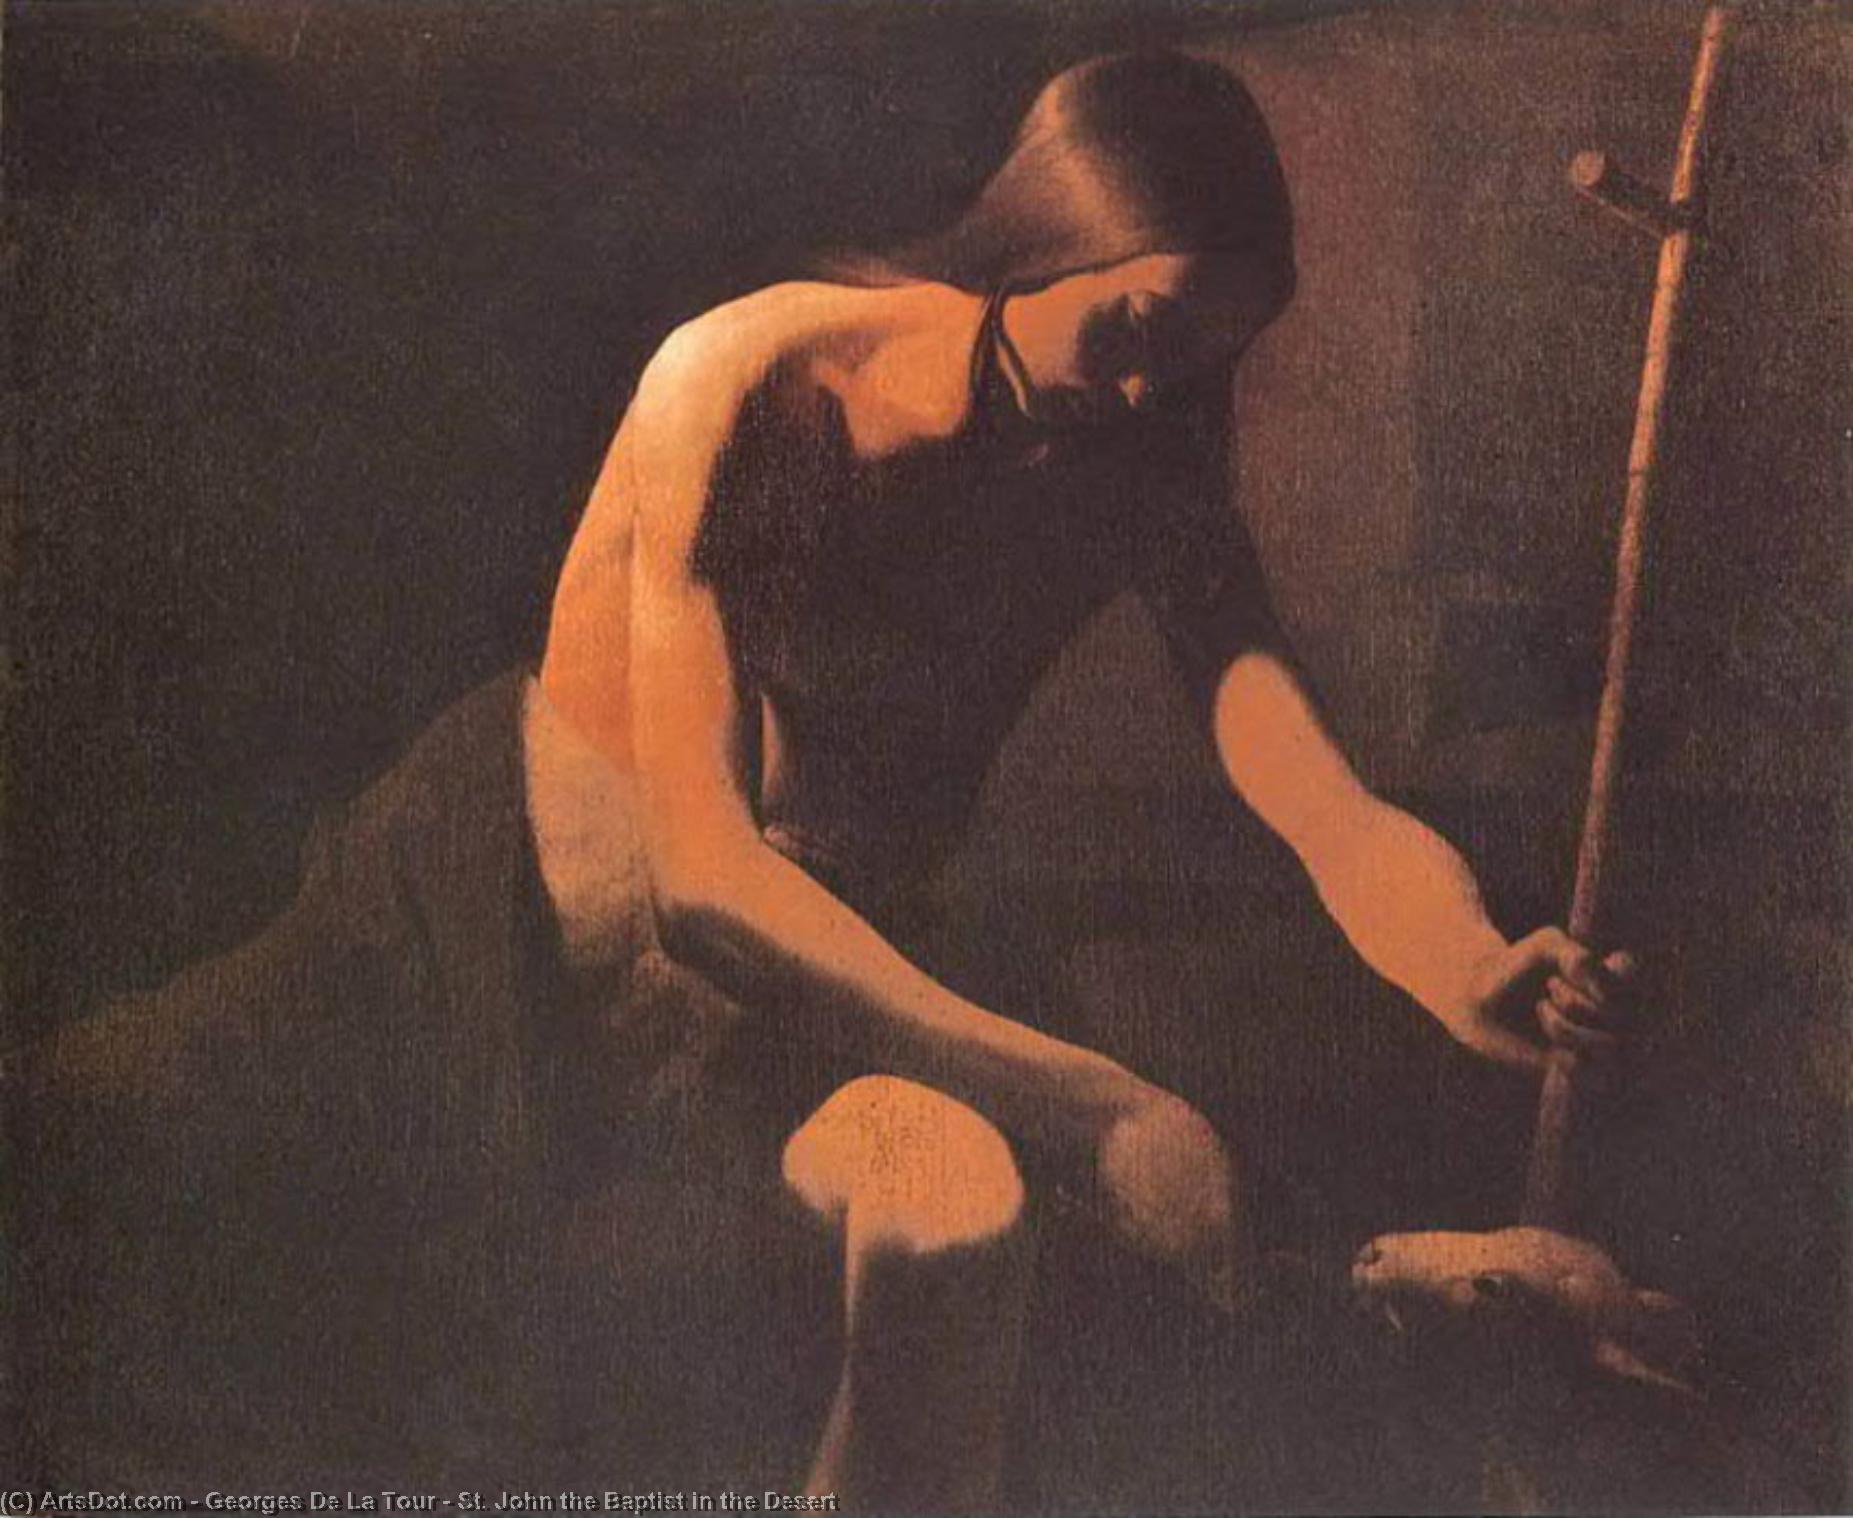 Wikioo.org – L'Encyclopédie des Beaux Arts - Peinture, Oeuvre de Georges De La Tour - r john le baptiste dans  au  DU DESERT